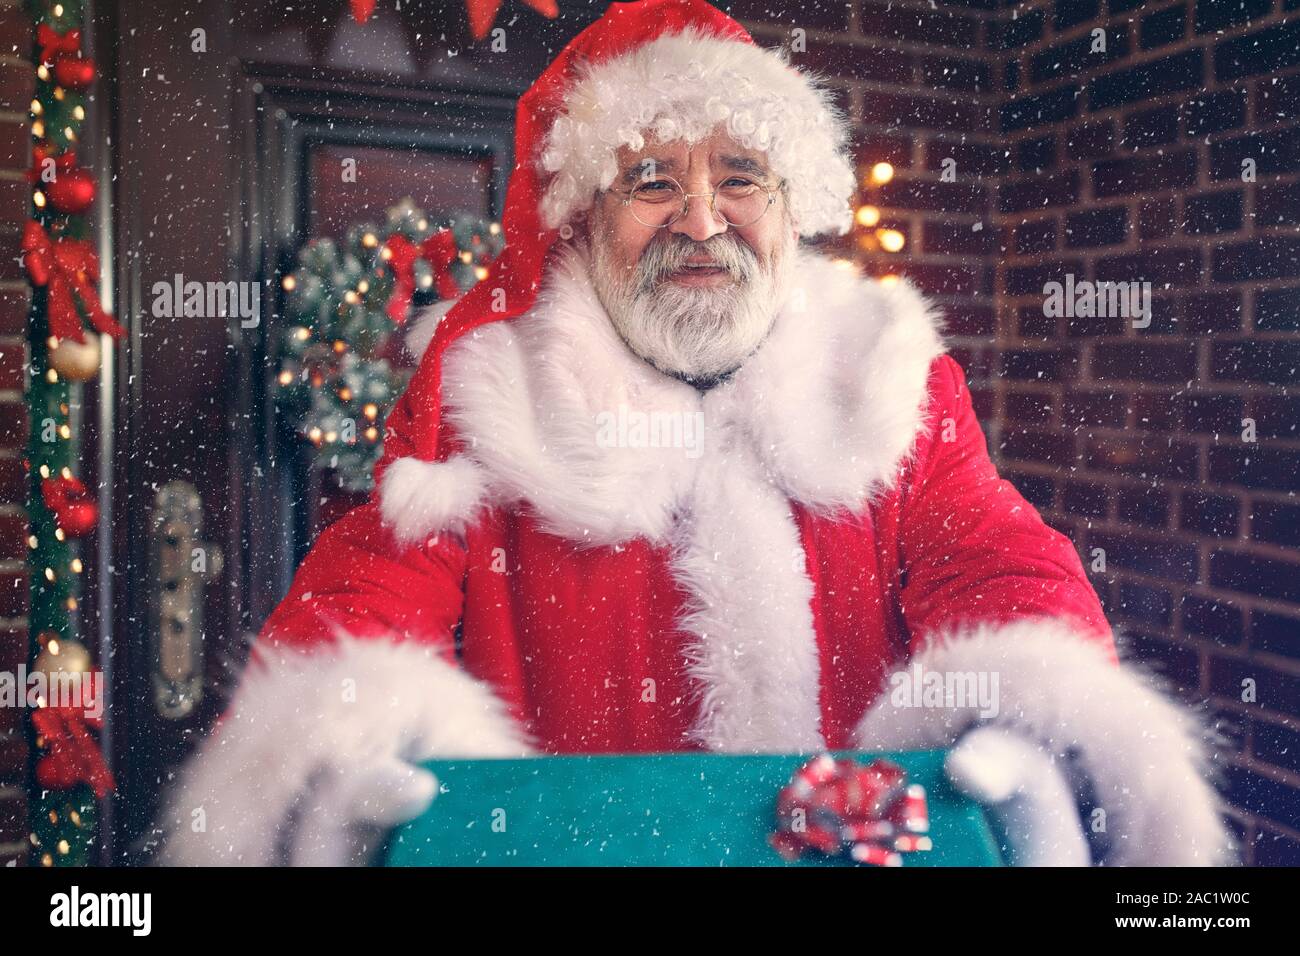 La noche de Navidad, Santa Claus sonriente traer el regalo de Navidad para los niños felices Foto de stock